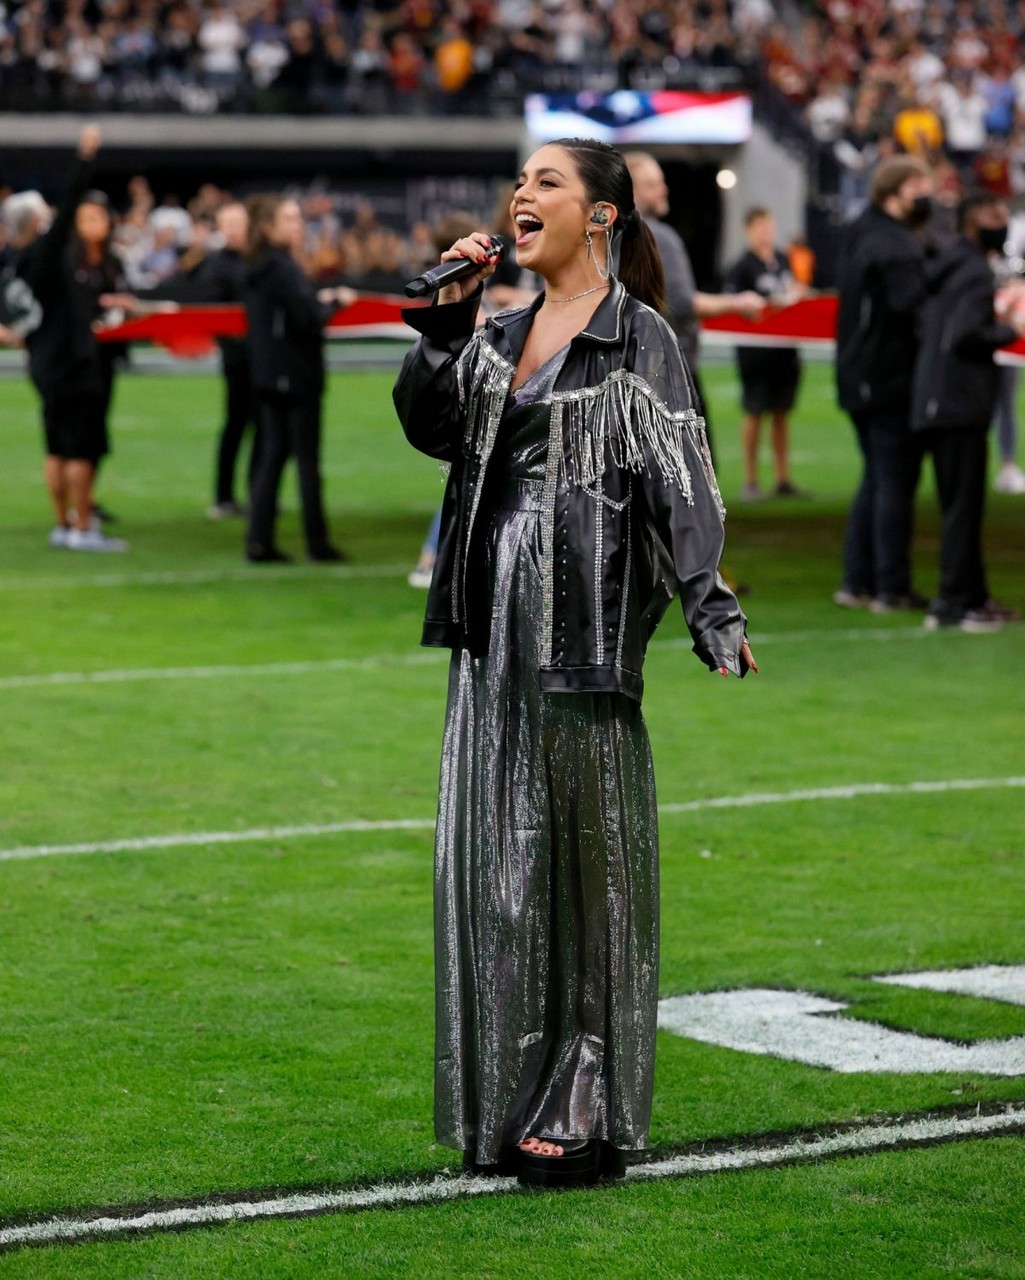 Vanessa Hudgens Sings Anthem Allegiant Stadium